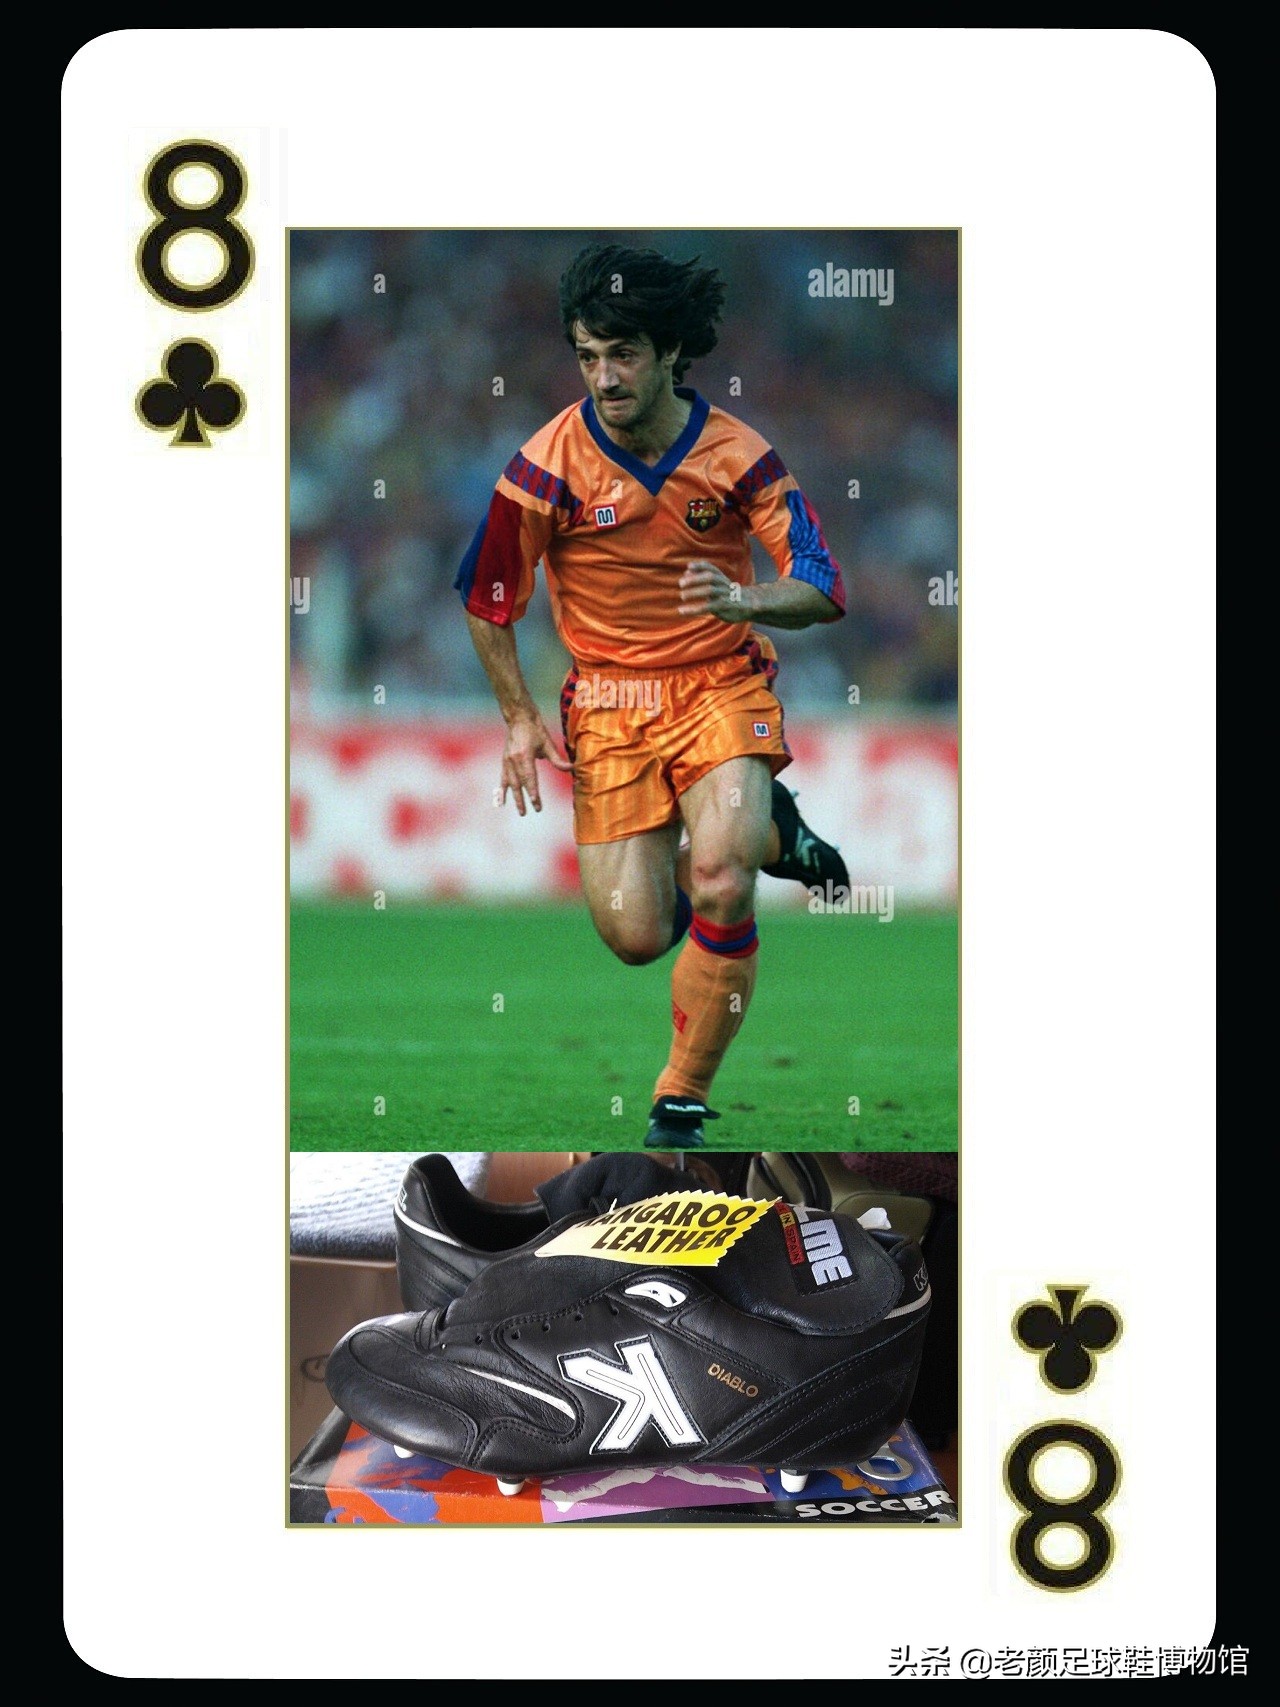 西班牙足球衣服品牌（赞助皇马球衣的卡尔美，还赞助巴萨梦一队三大核心和门迭塔球鞋）